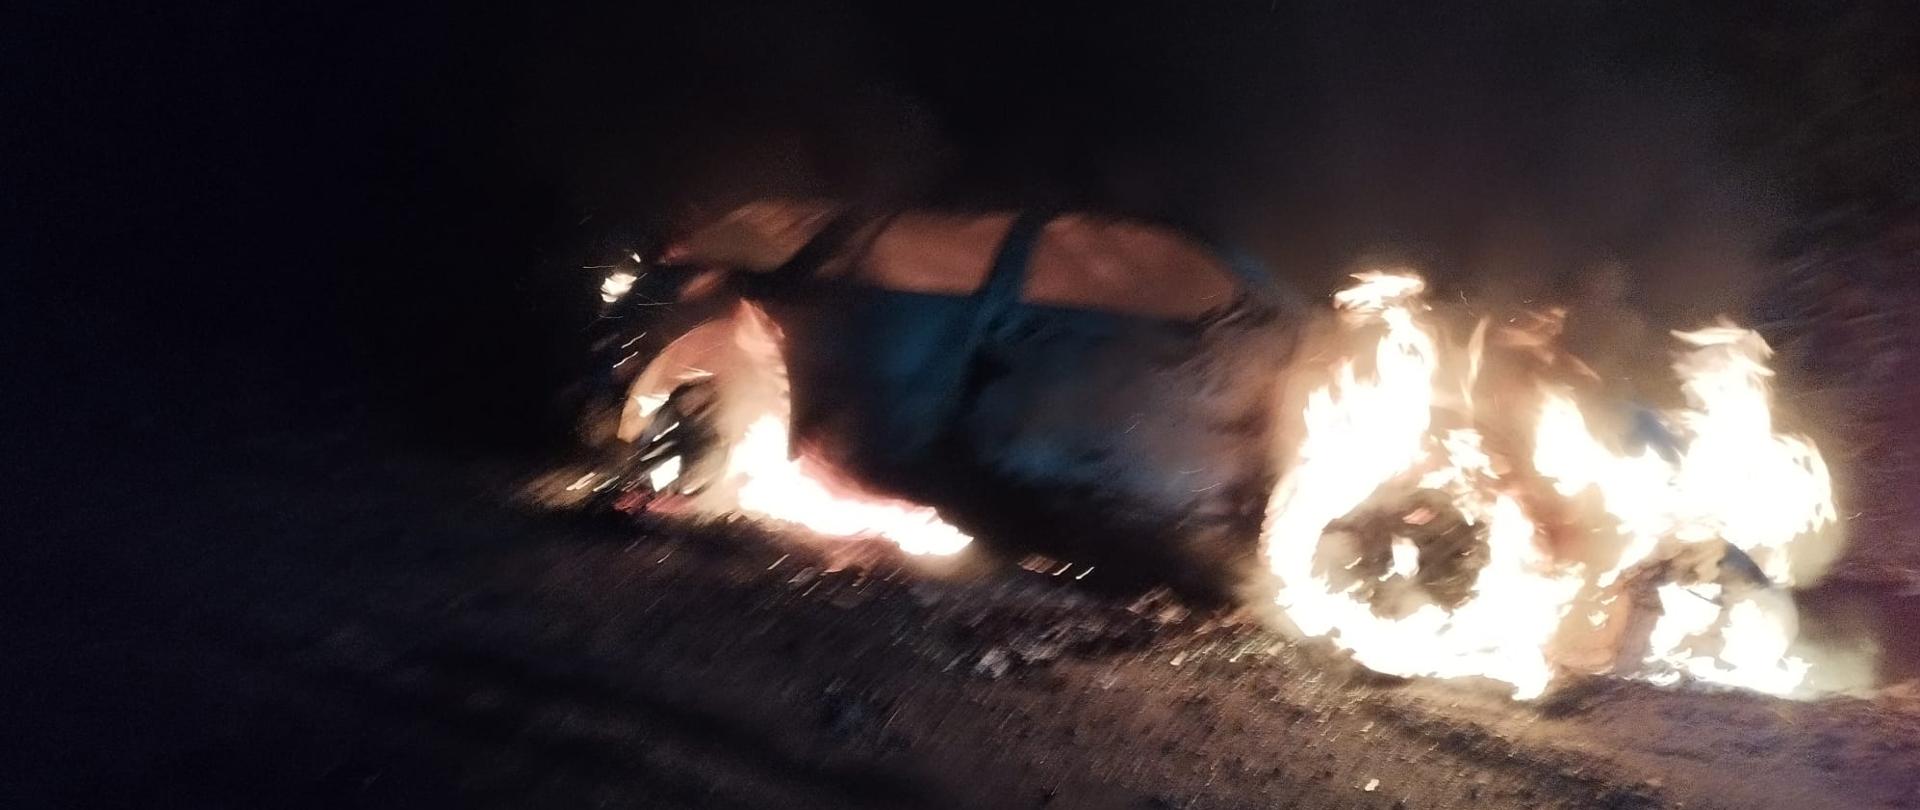 Zdjęcie przedstawia objęty pożarem samochód osobowy w porze nocnej. Samochód znajduje się w rowie.